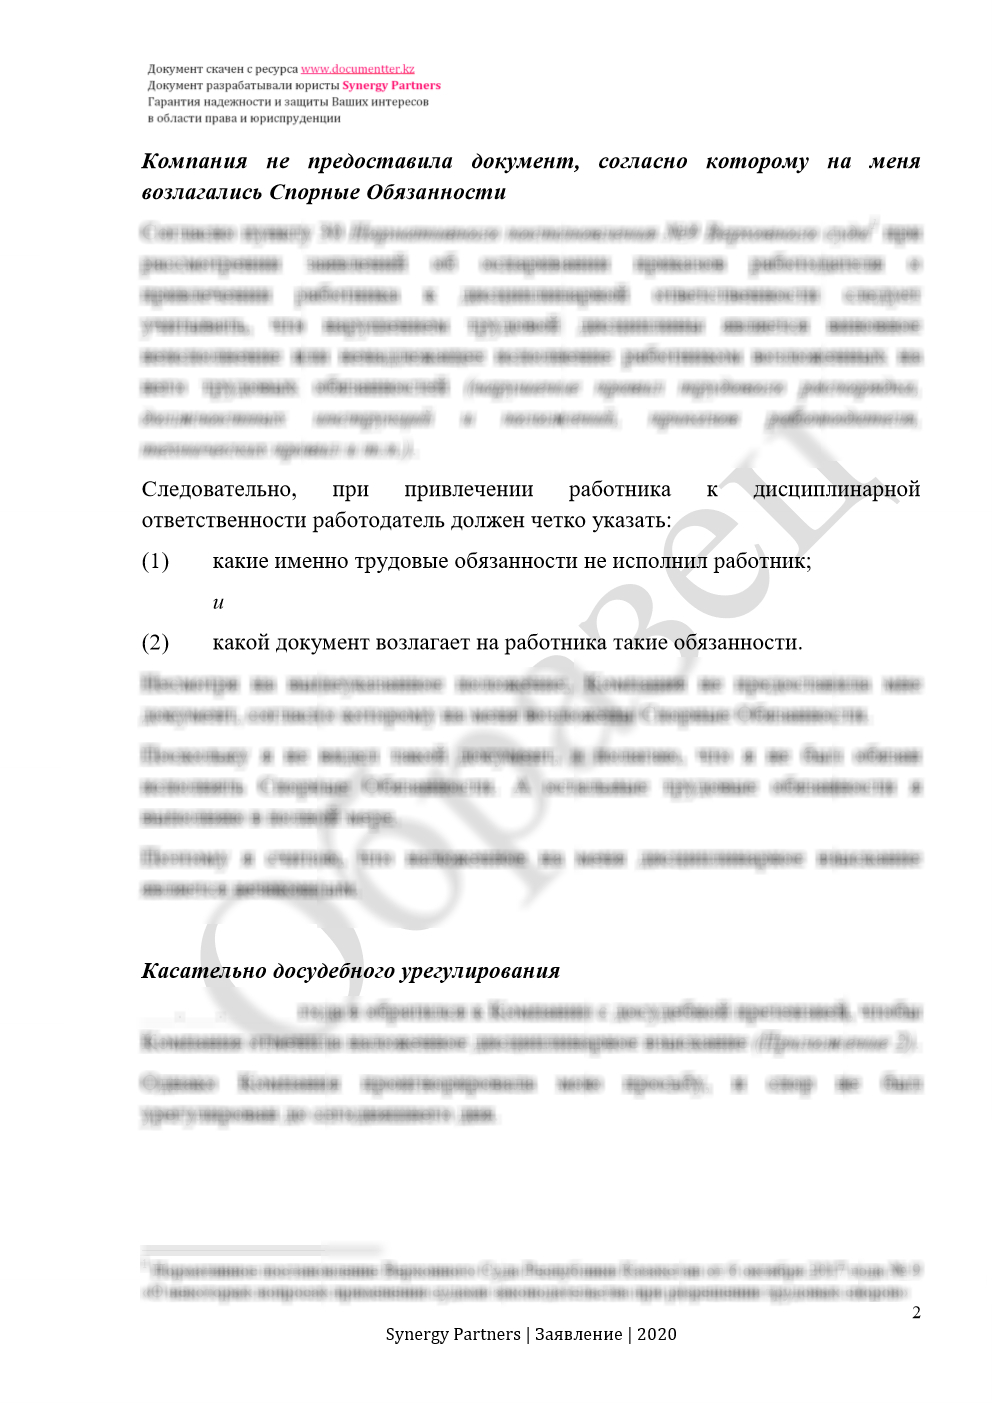 Заявление в согласительную комиссию, если незаконно наложили дисциплинарное взыскание | documentterkz.com в Казахстане